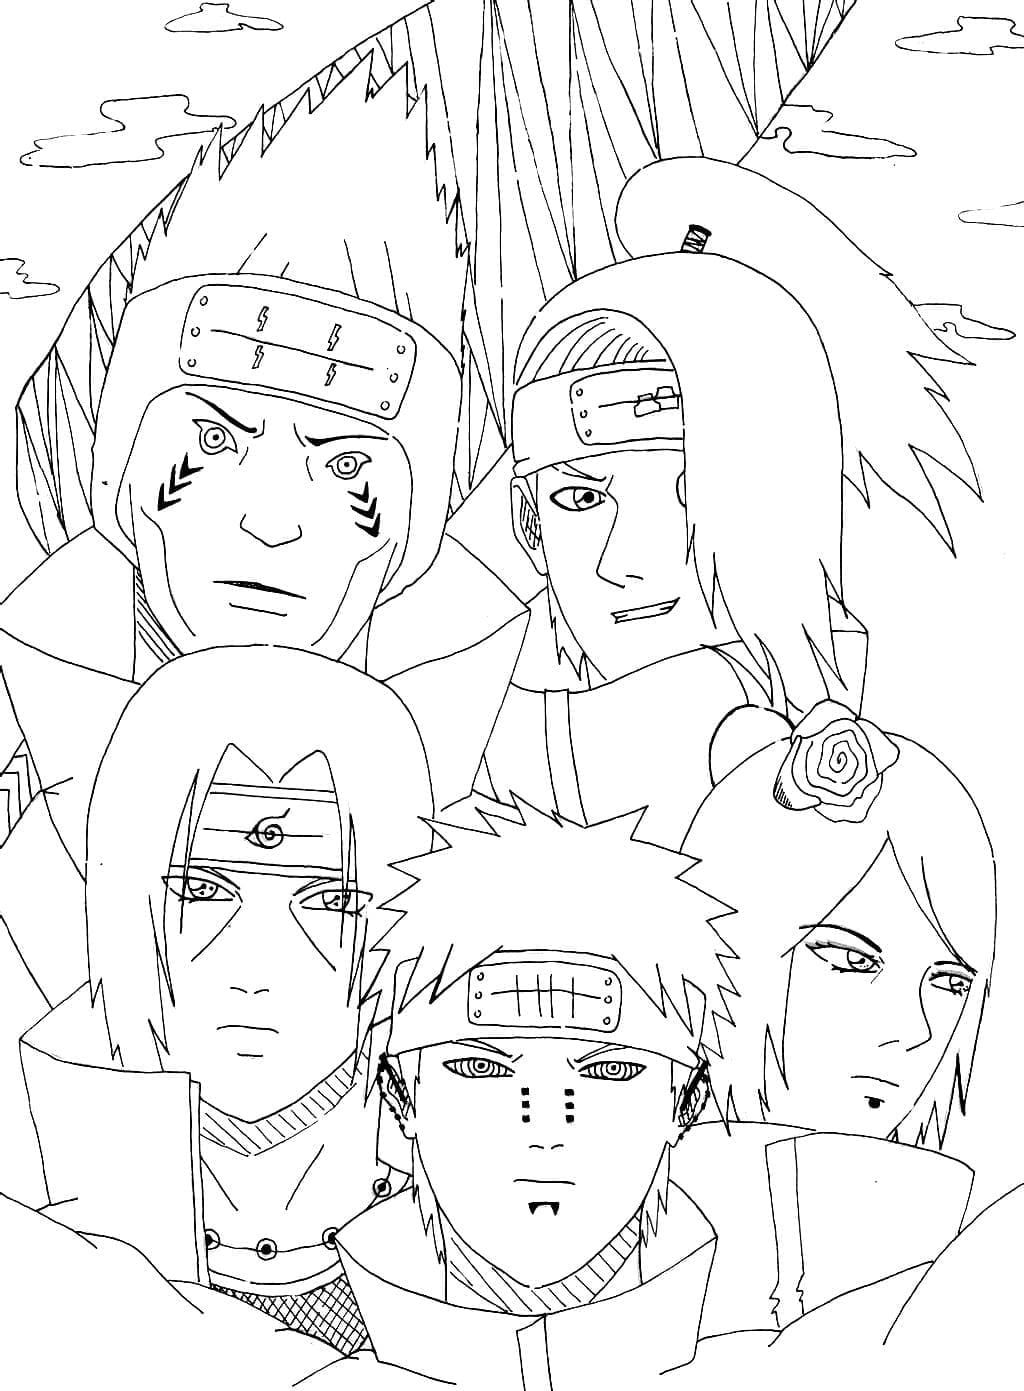 Akatsuki de Naruto Shippuden coloring page